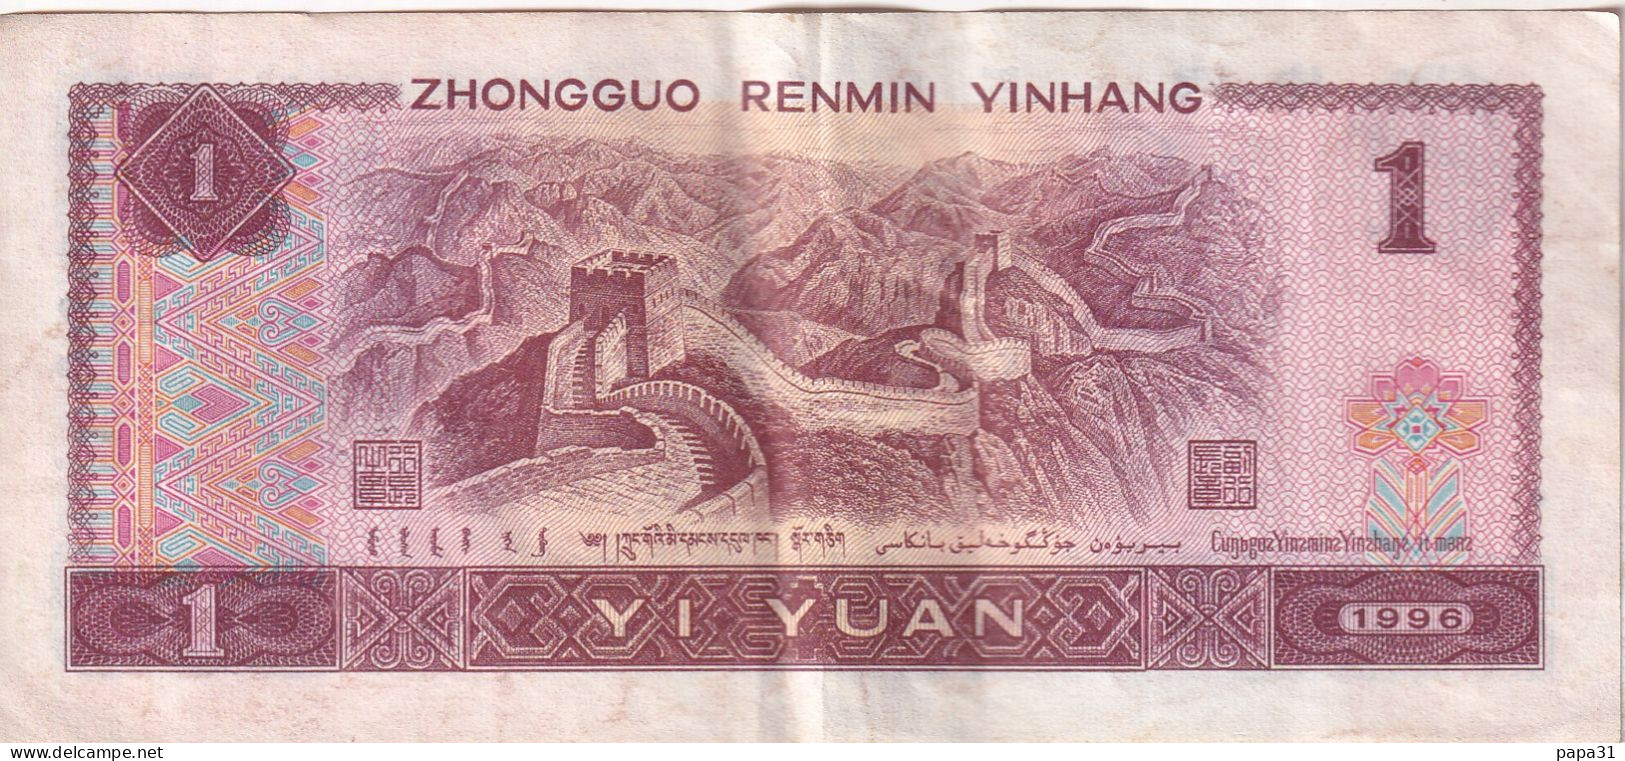 Billet De Banque - ZHONGGUO RENMIN YINHANG 1 YI YUAN - China